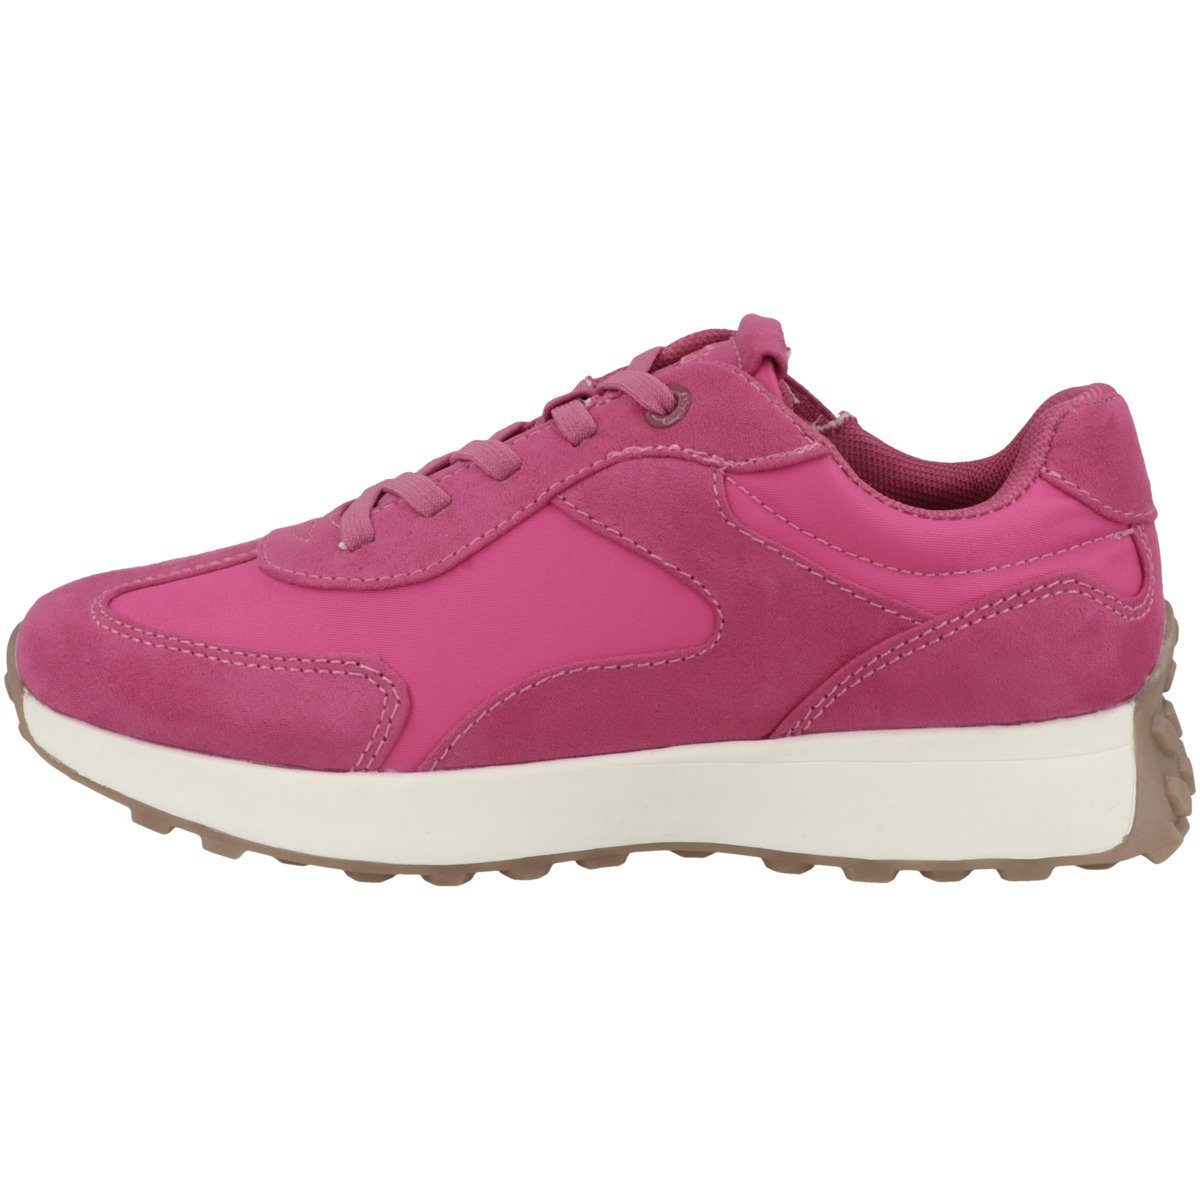 s.Oliver 5-43208-30 Mädchen pink Sneaker